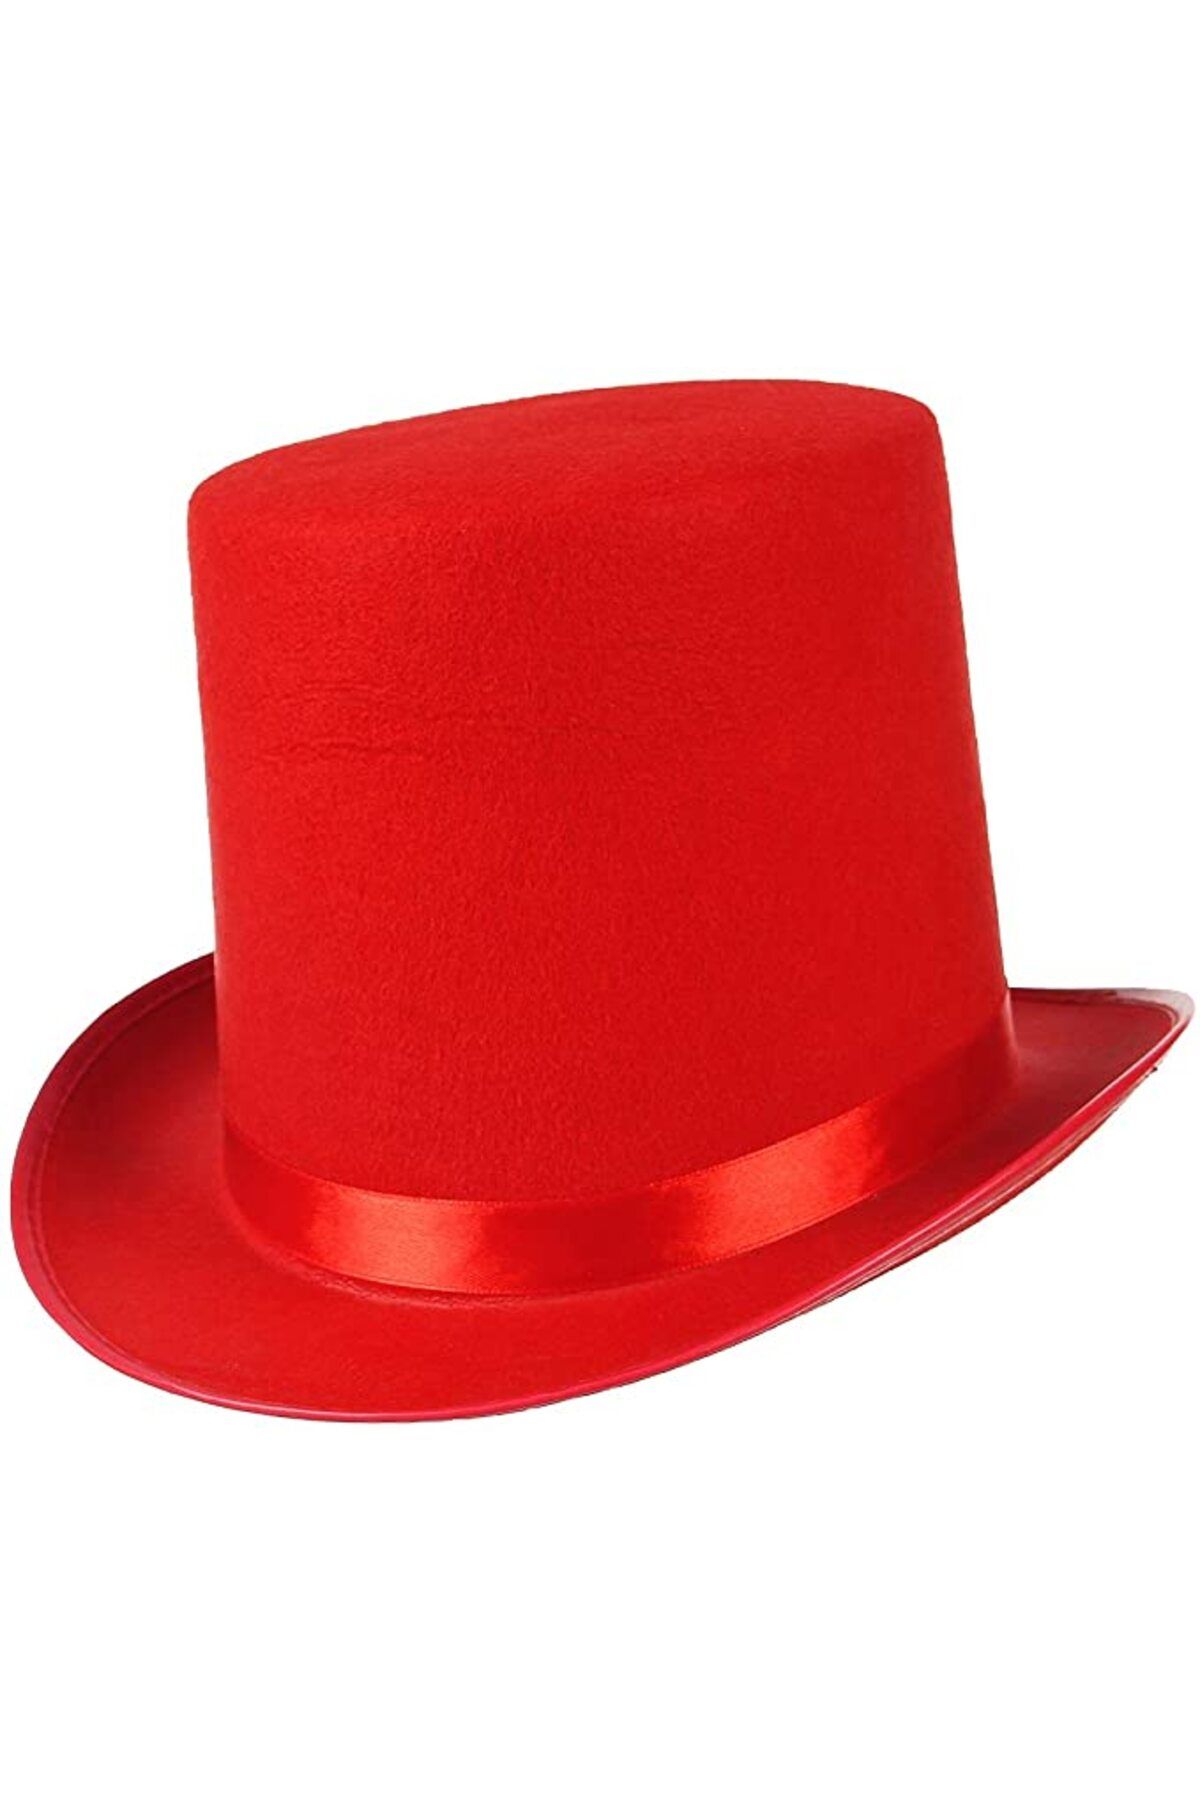 MENBOX Yetişkinler İçin Kırmızı Renk Ringmaster Sihirbaz Şapkası Fötr Şapka 15 cm (CLZ)